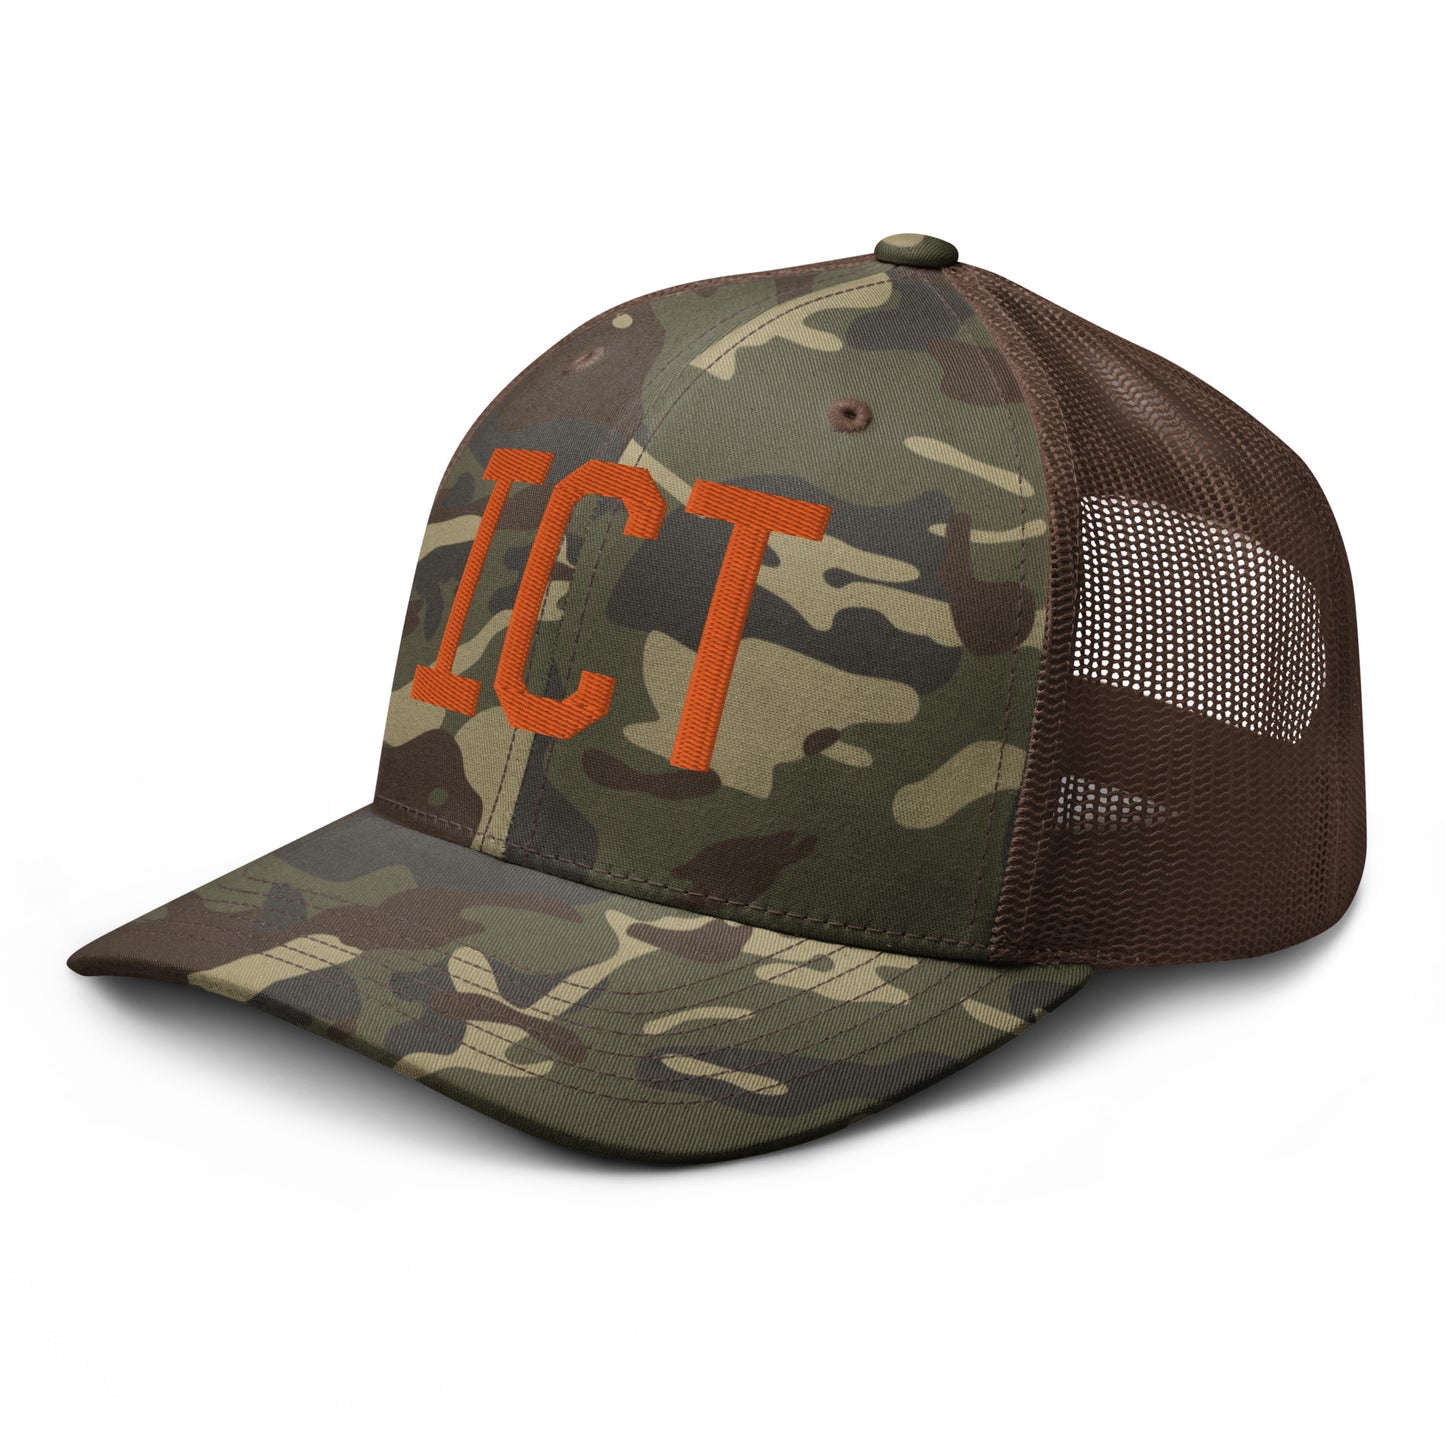 Airport Code Camouflage Trucker Hat - Orange • ICT Wichita • YHM Designs - Image 15